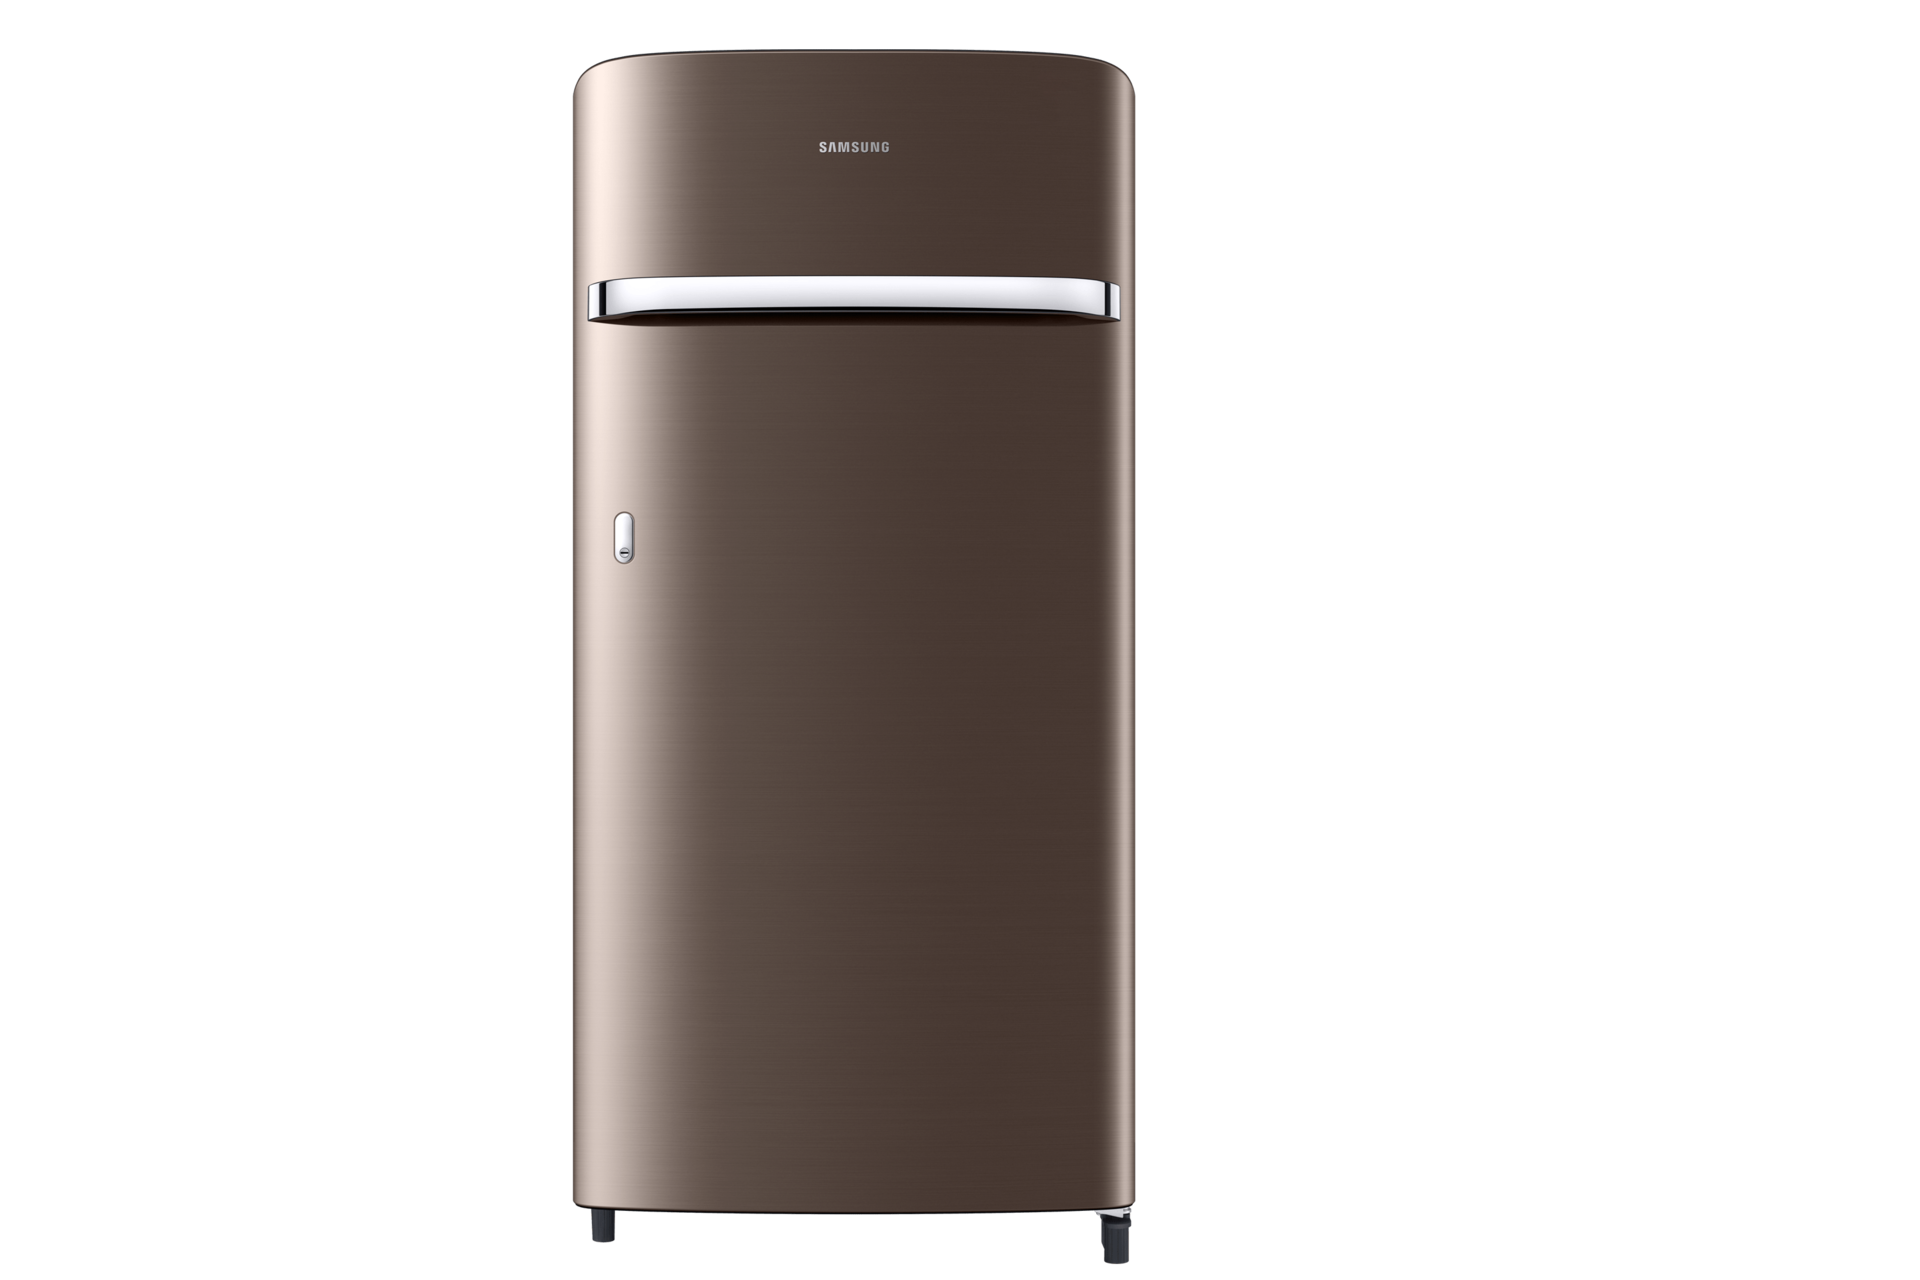 Samsung 198L 1 Door Refrigerator (Luxe Brown)